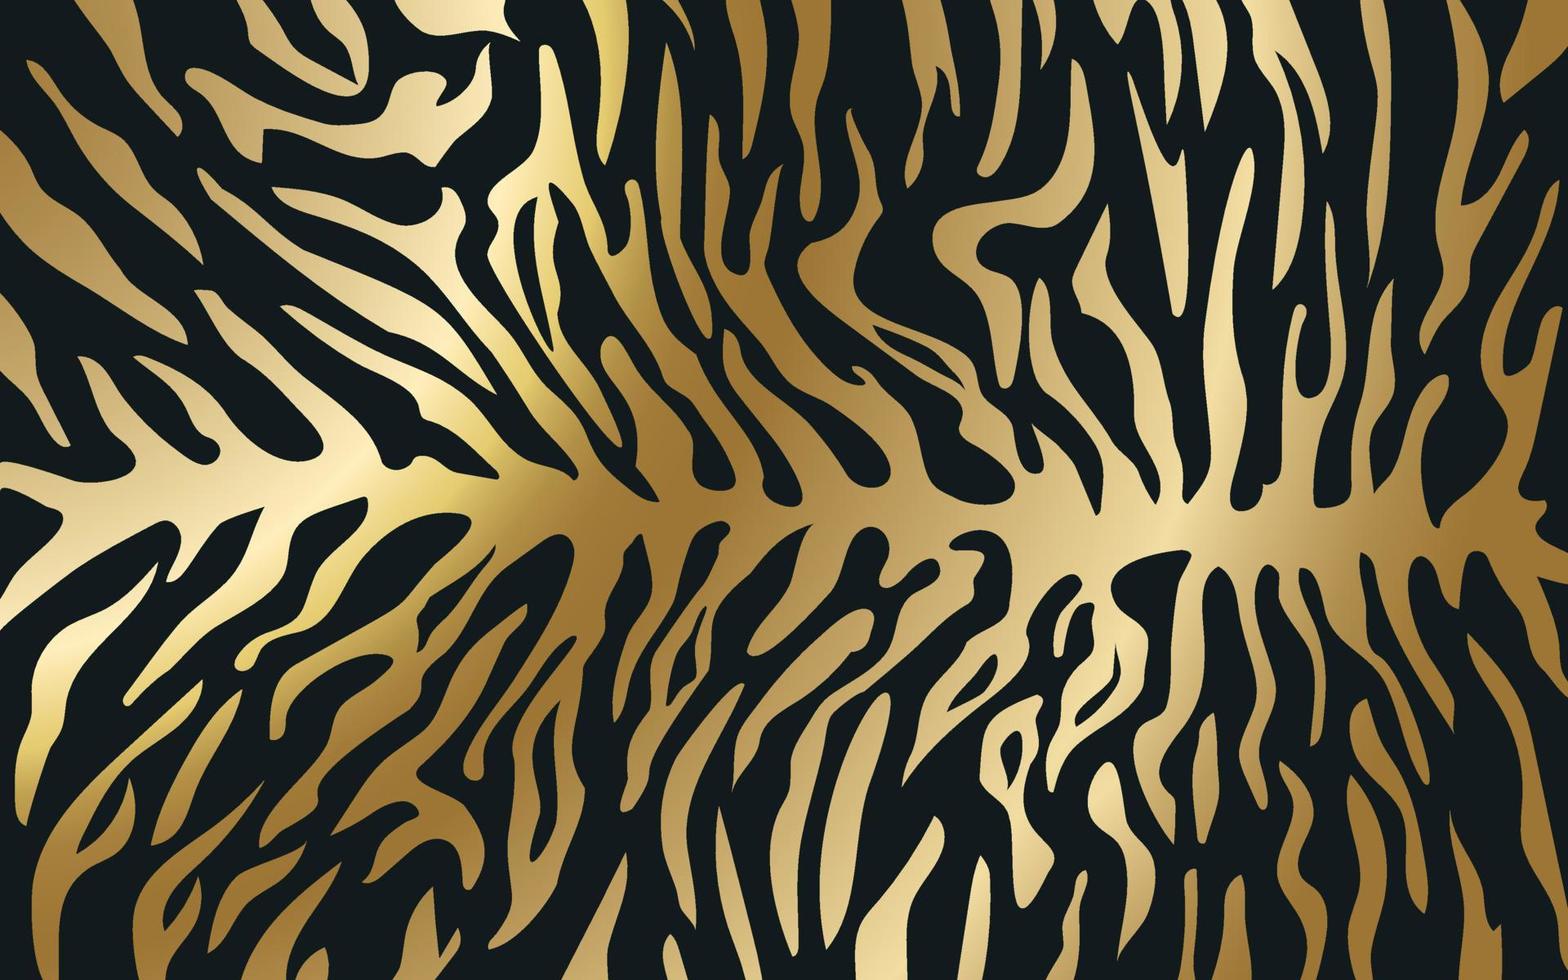 ränder på huden av en tiger, ett mönster av ränder på huden av ett rovdjur, guldmönster på en mörk bakgrund. vektor